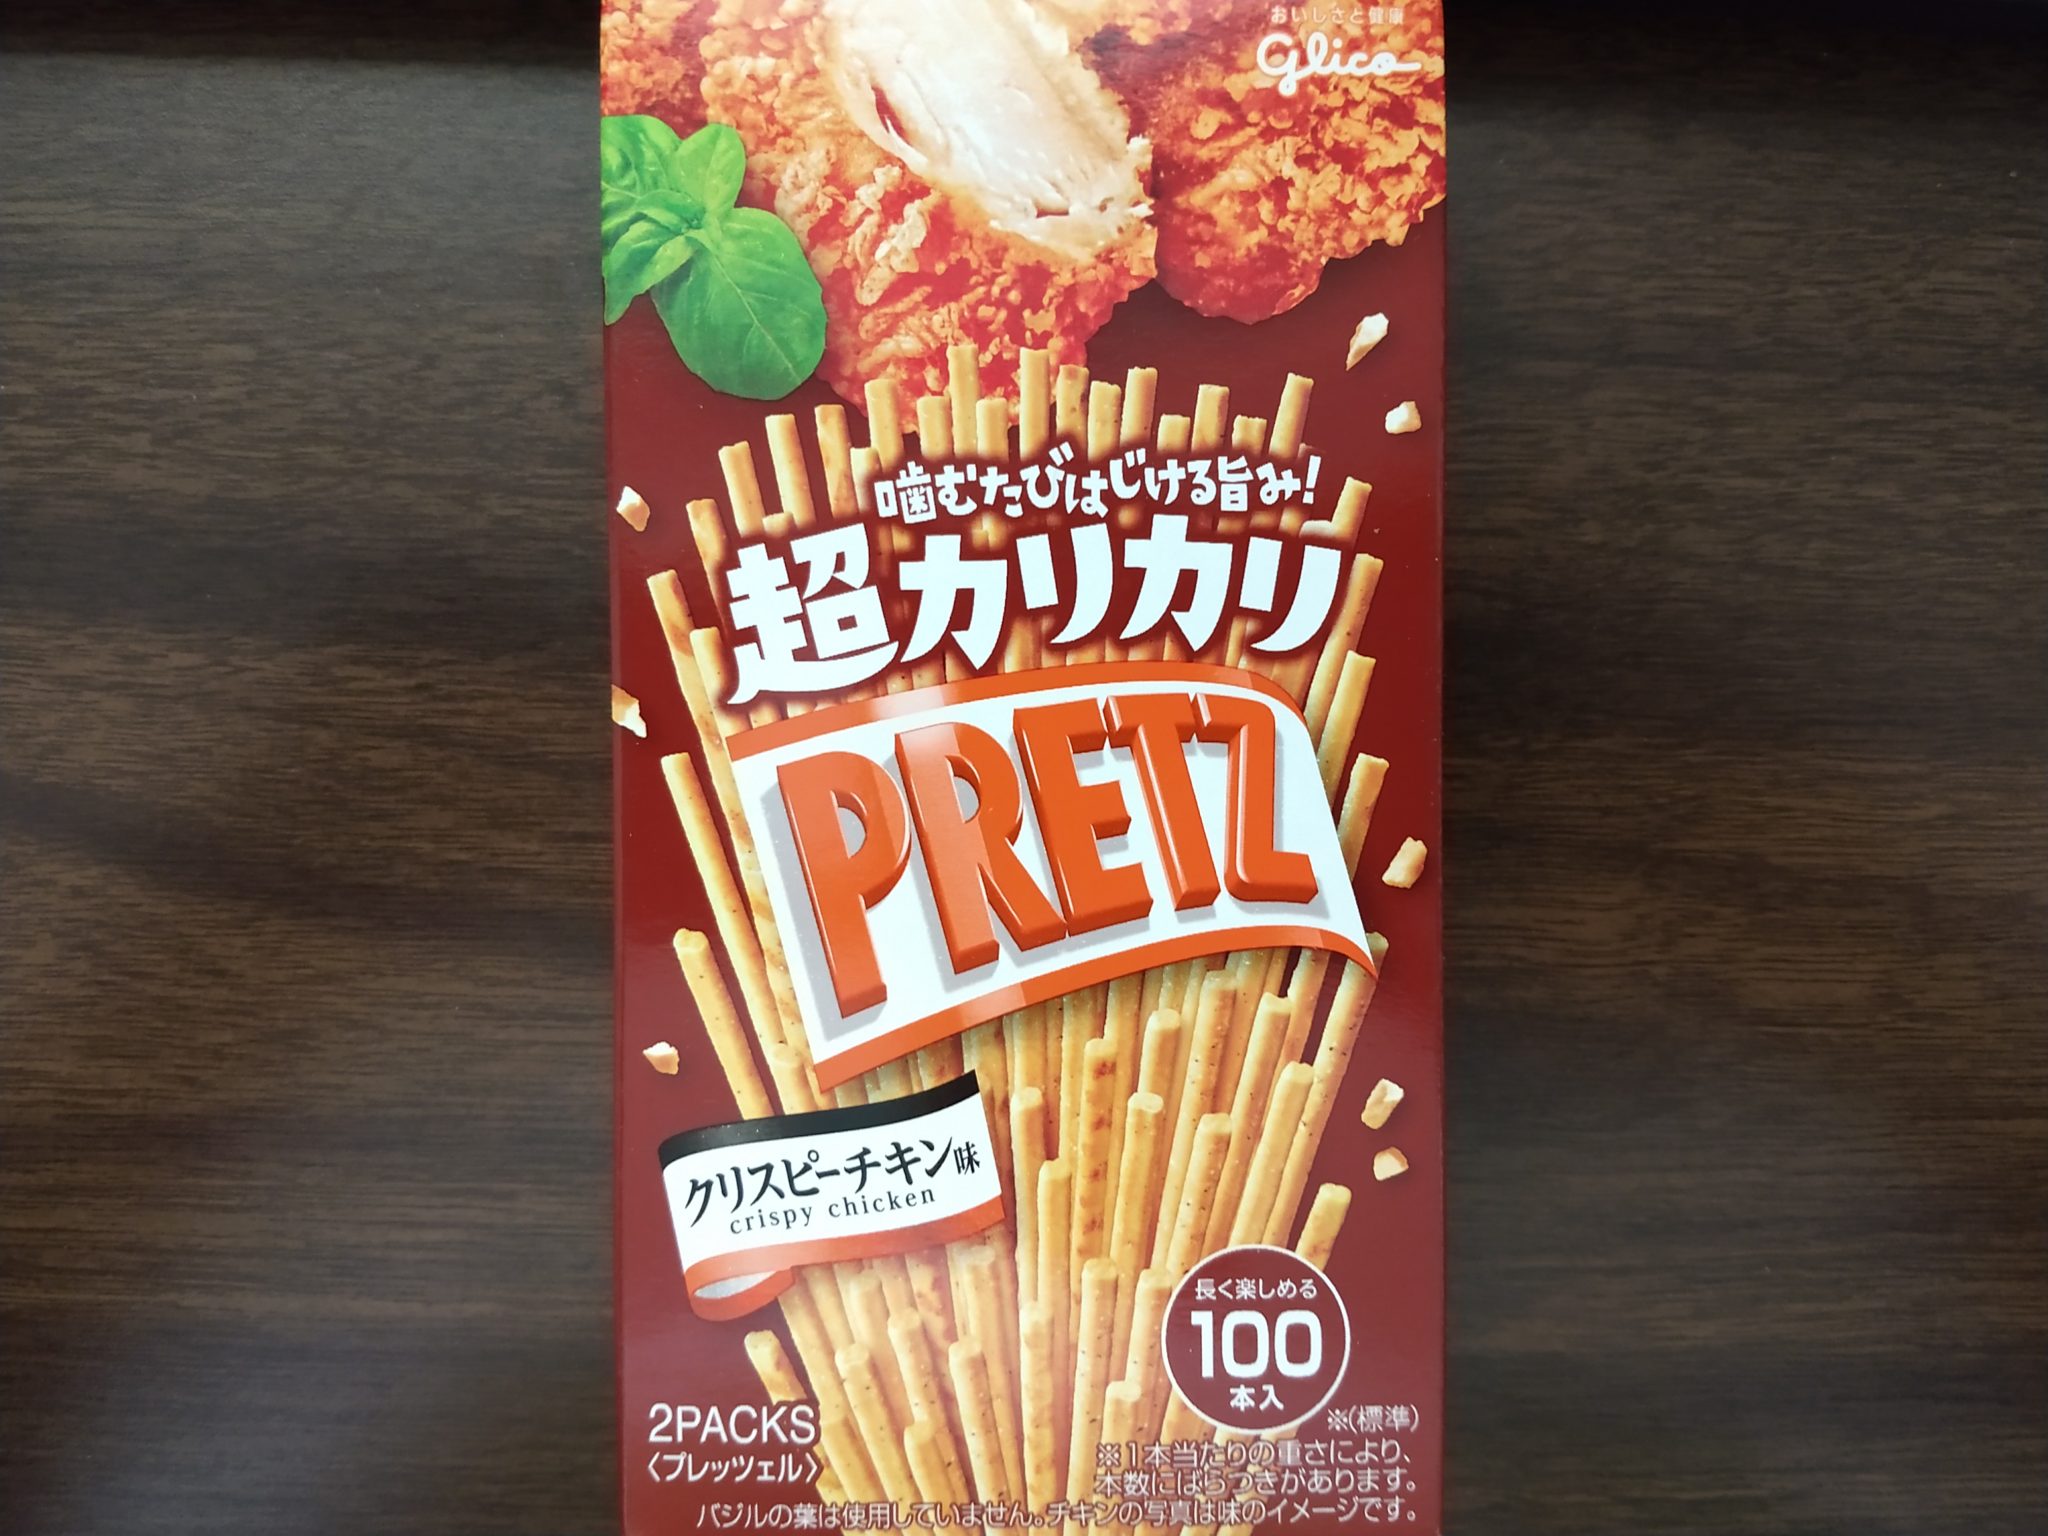 Pretz – Crispy Chicken